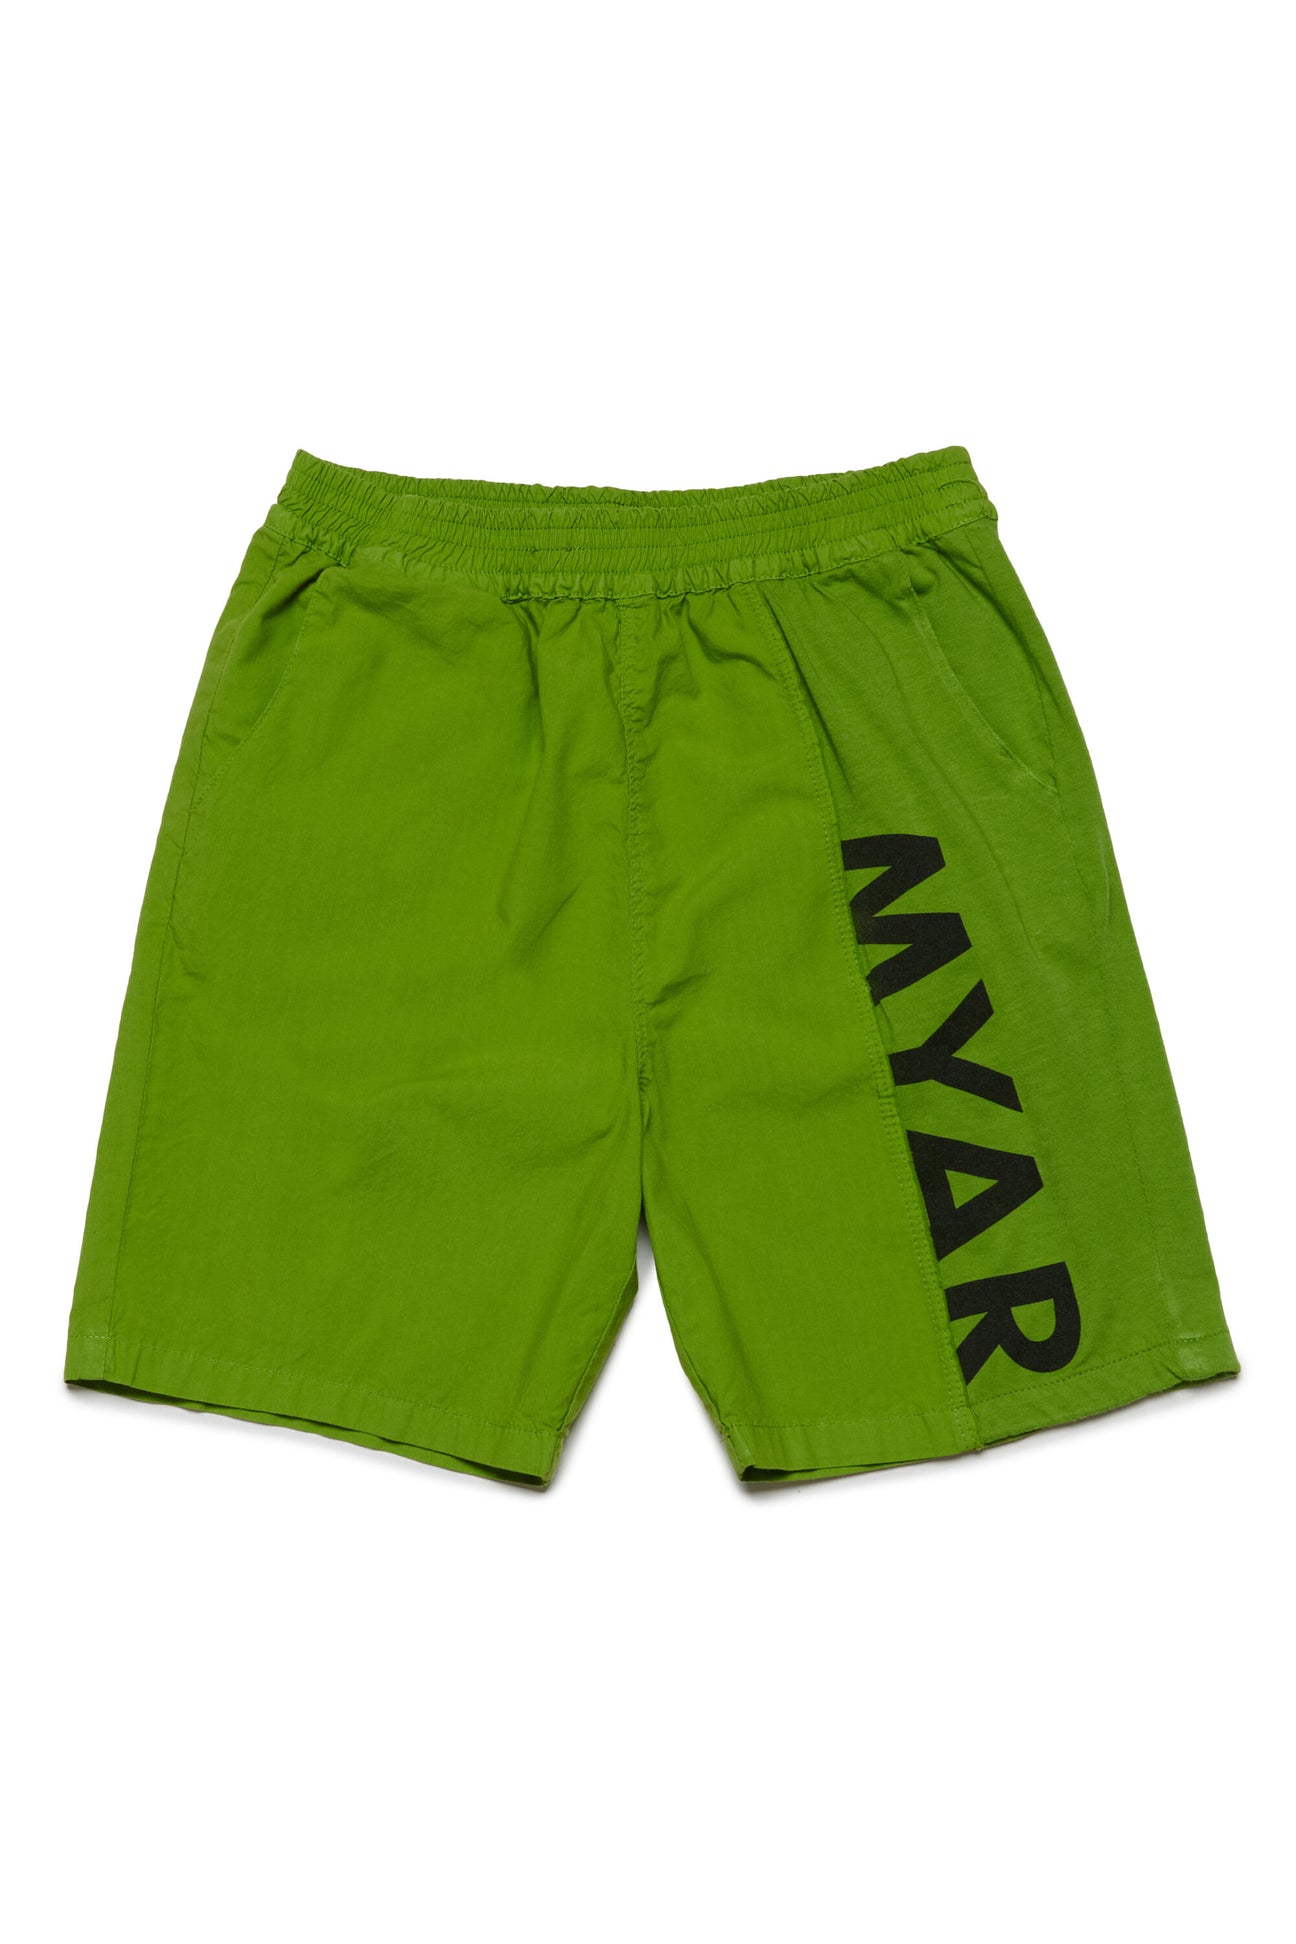 Pantalones cortos en tejido deadstock con logotipo MYAR 